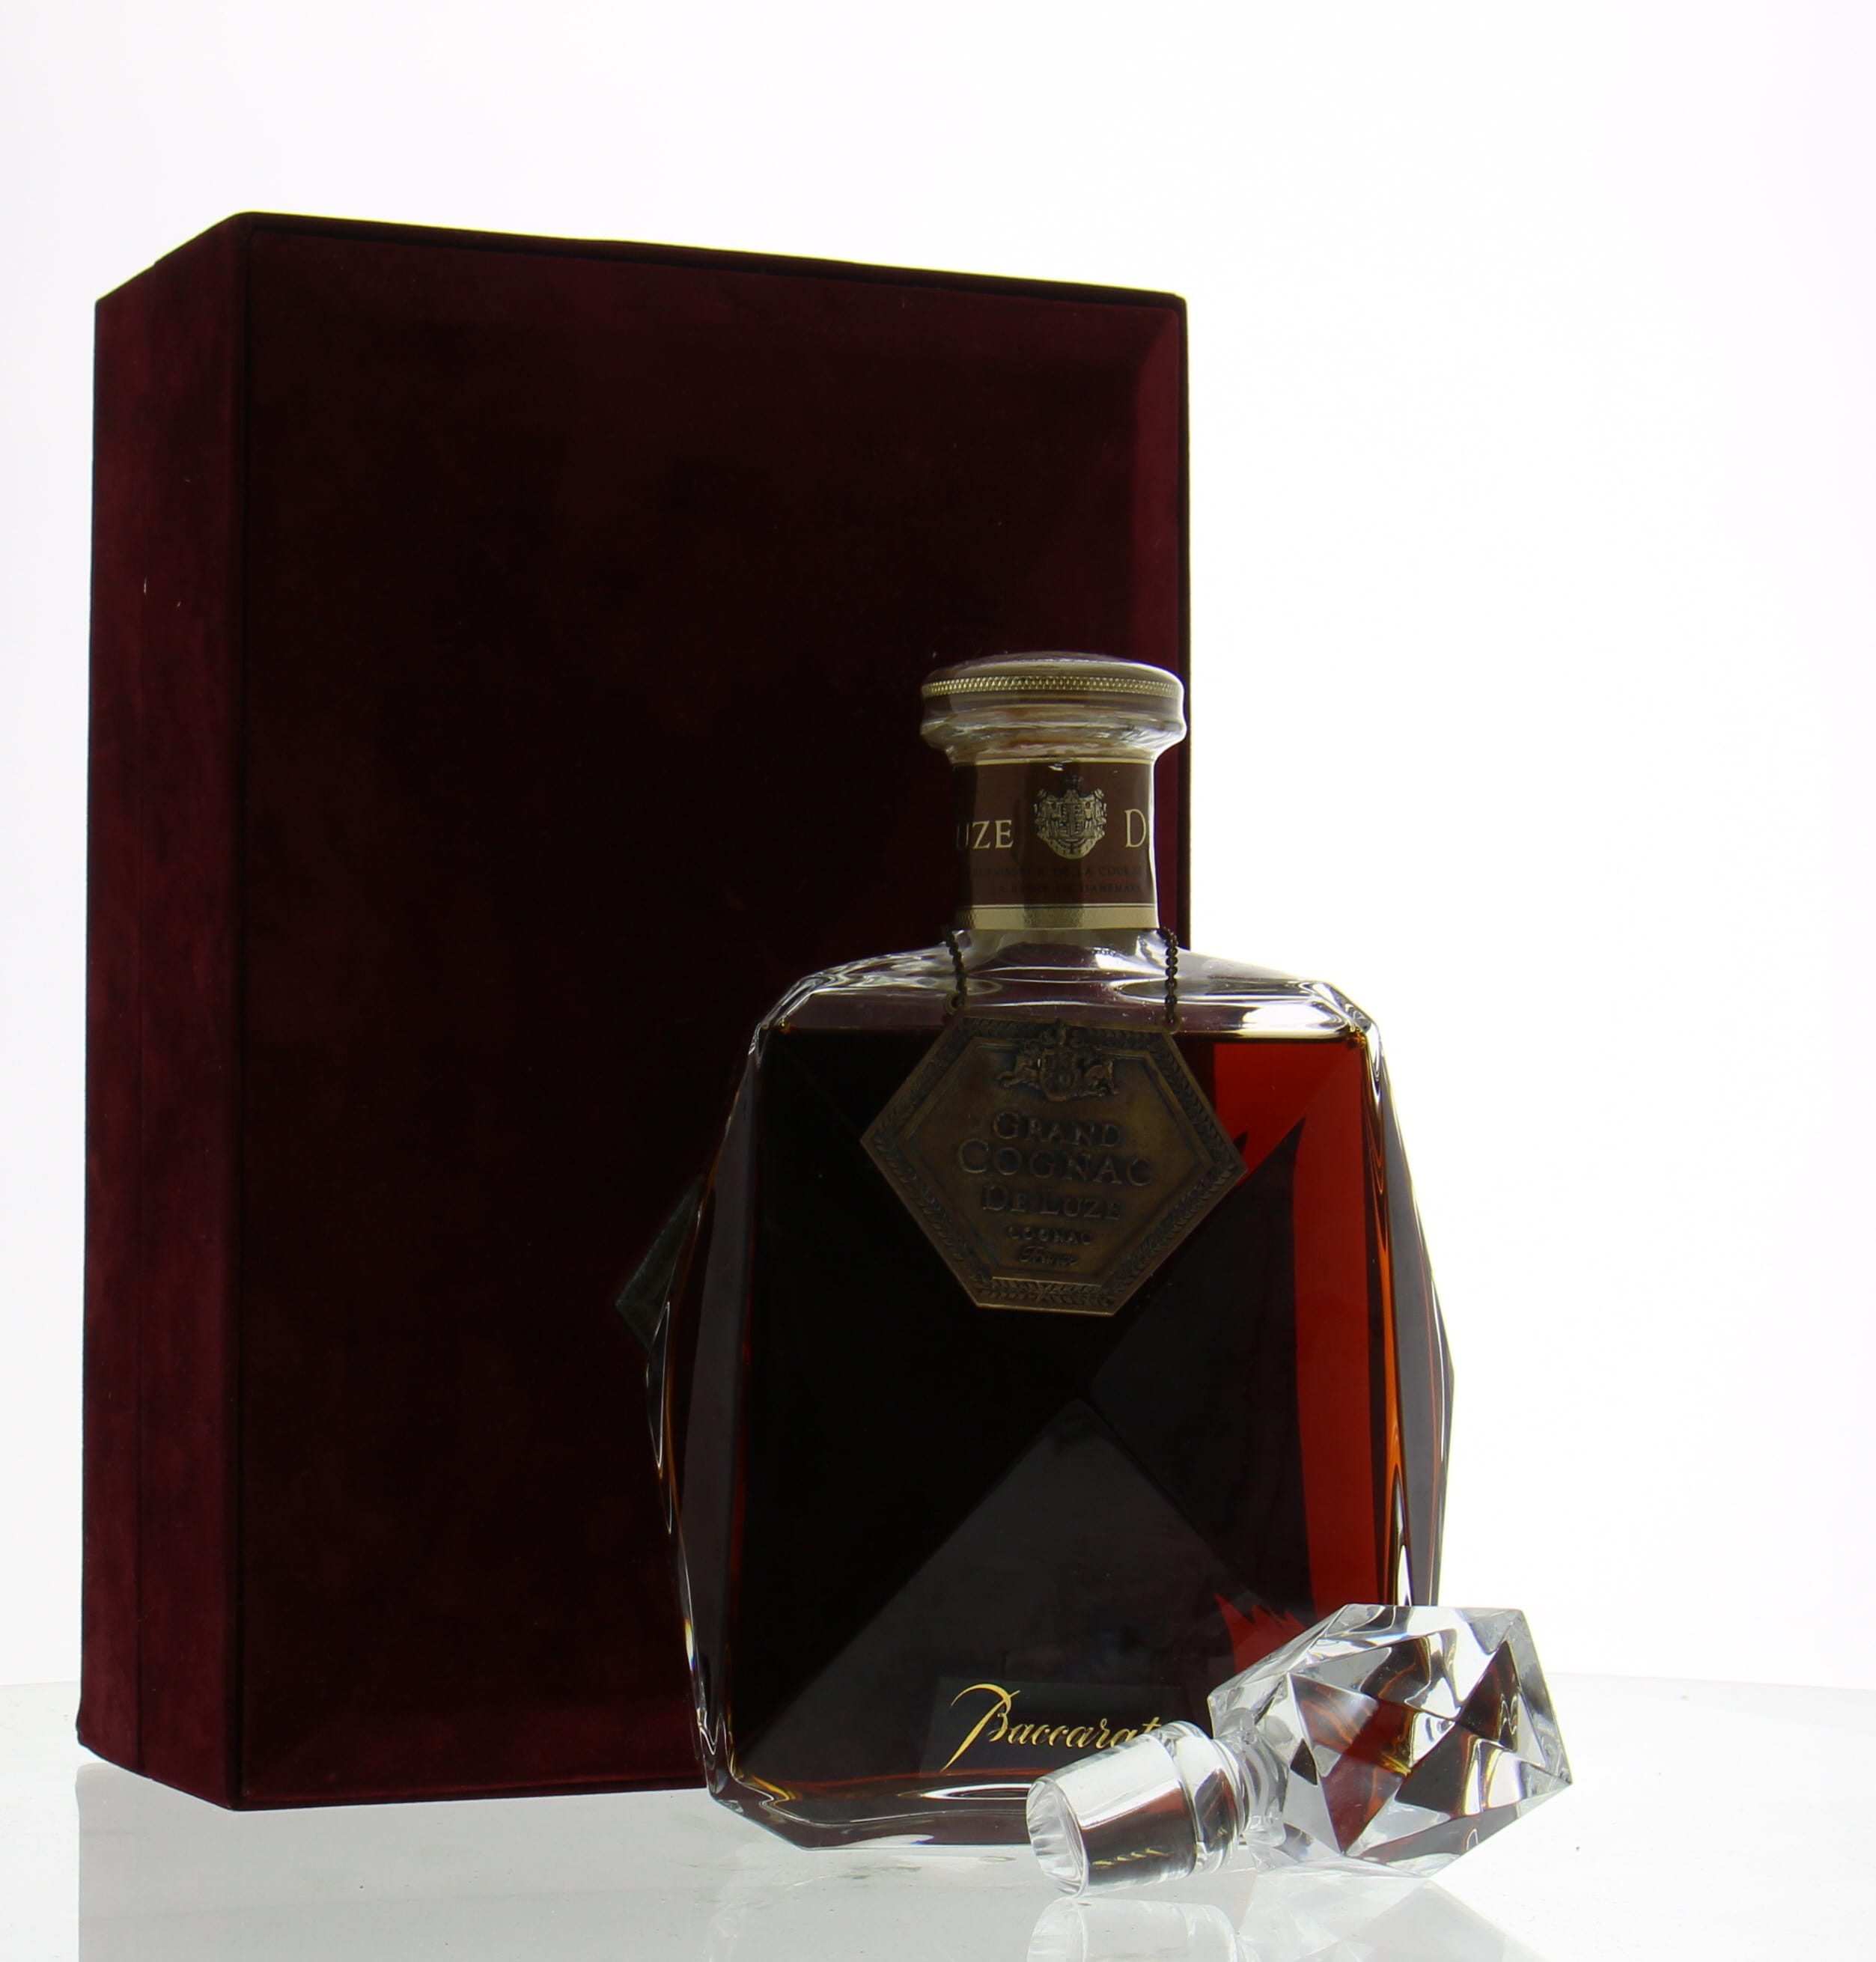 De Luze - Baccarat Grand Cognac no A 995 NV Perfect